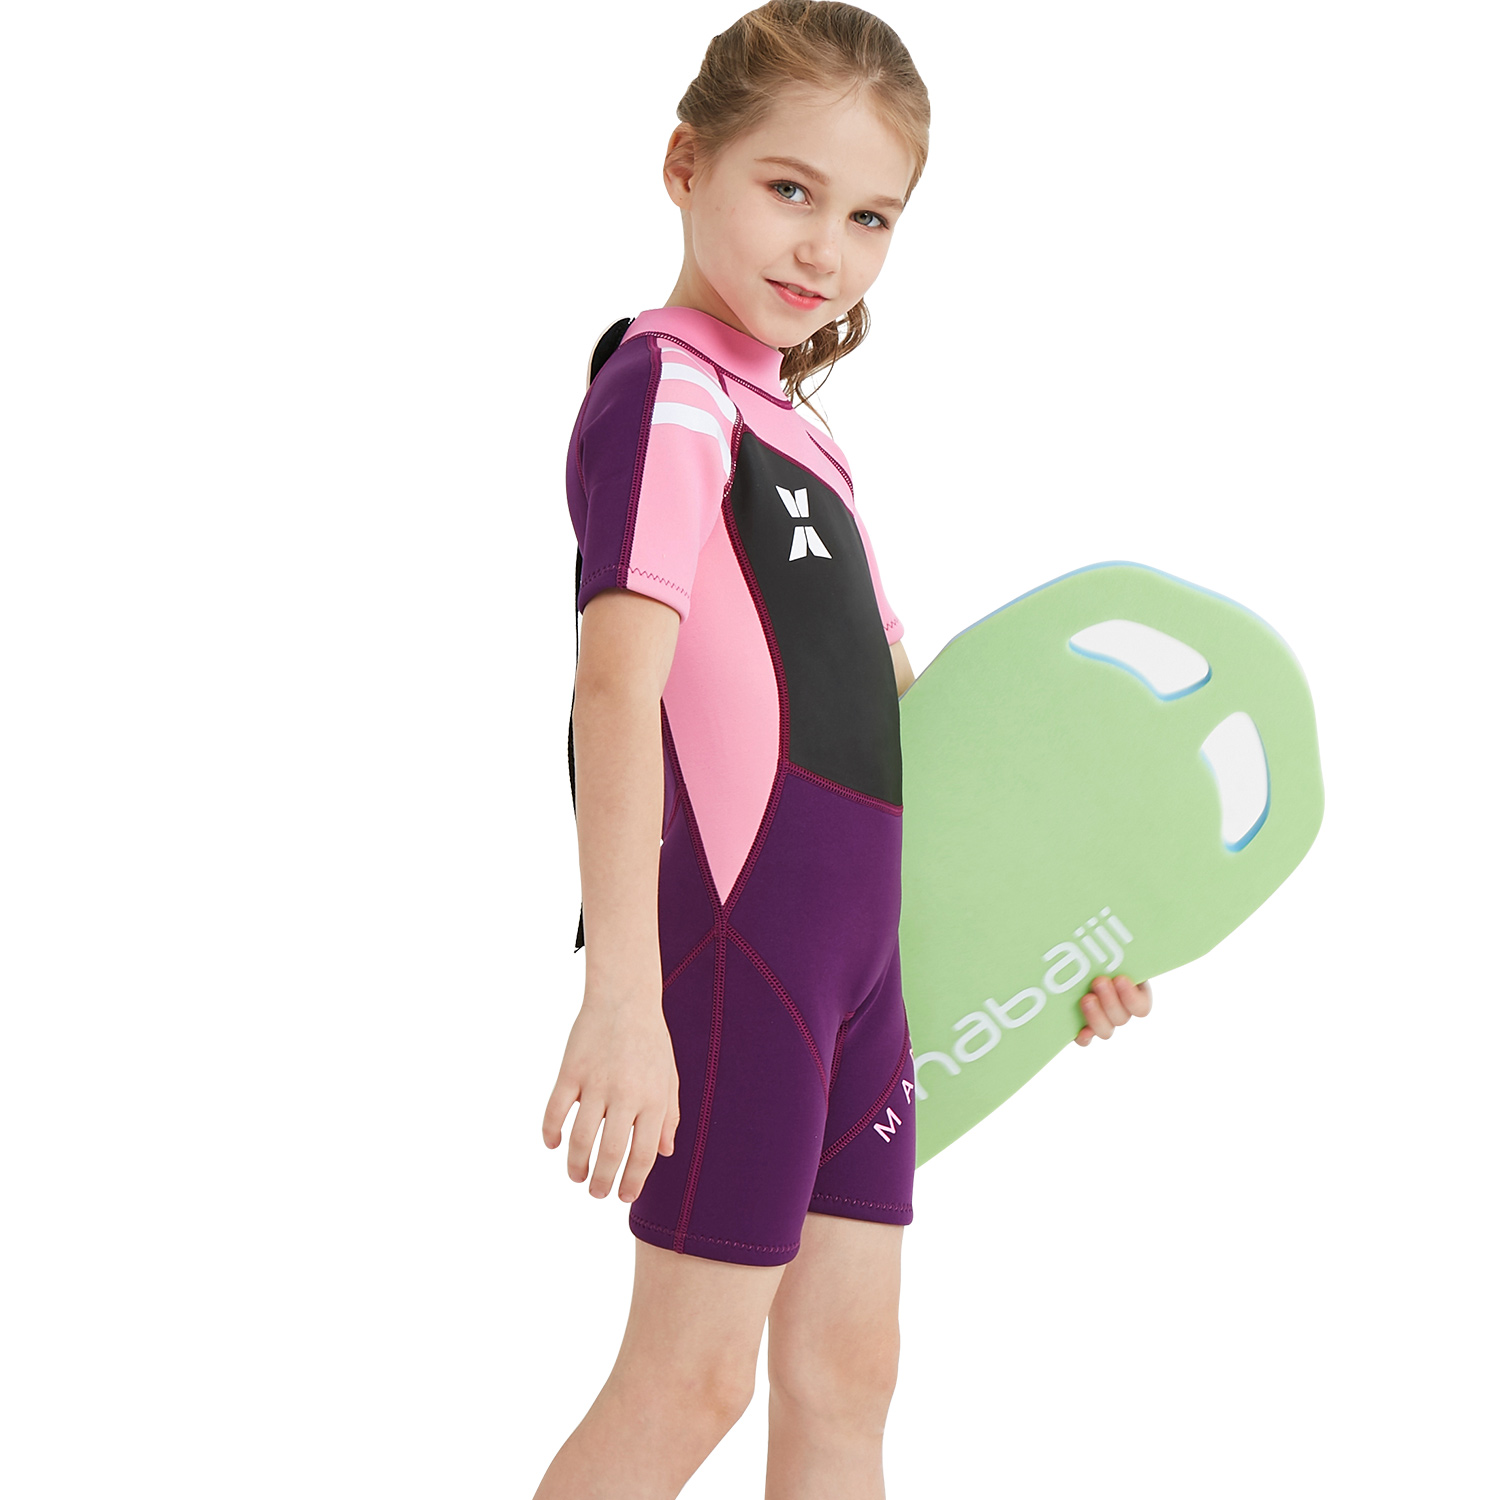 Irder - short sleeve good fabric girl children swimwear wetsuit for girl